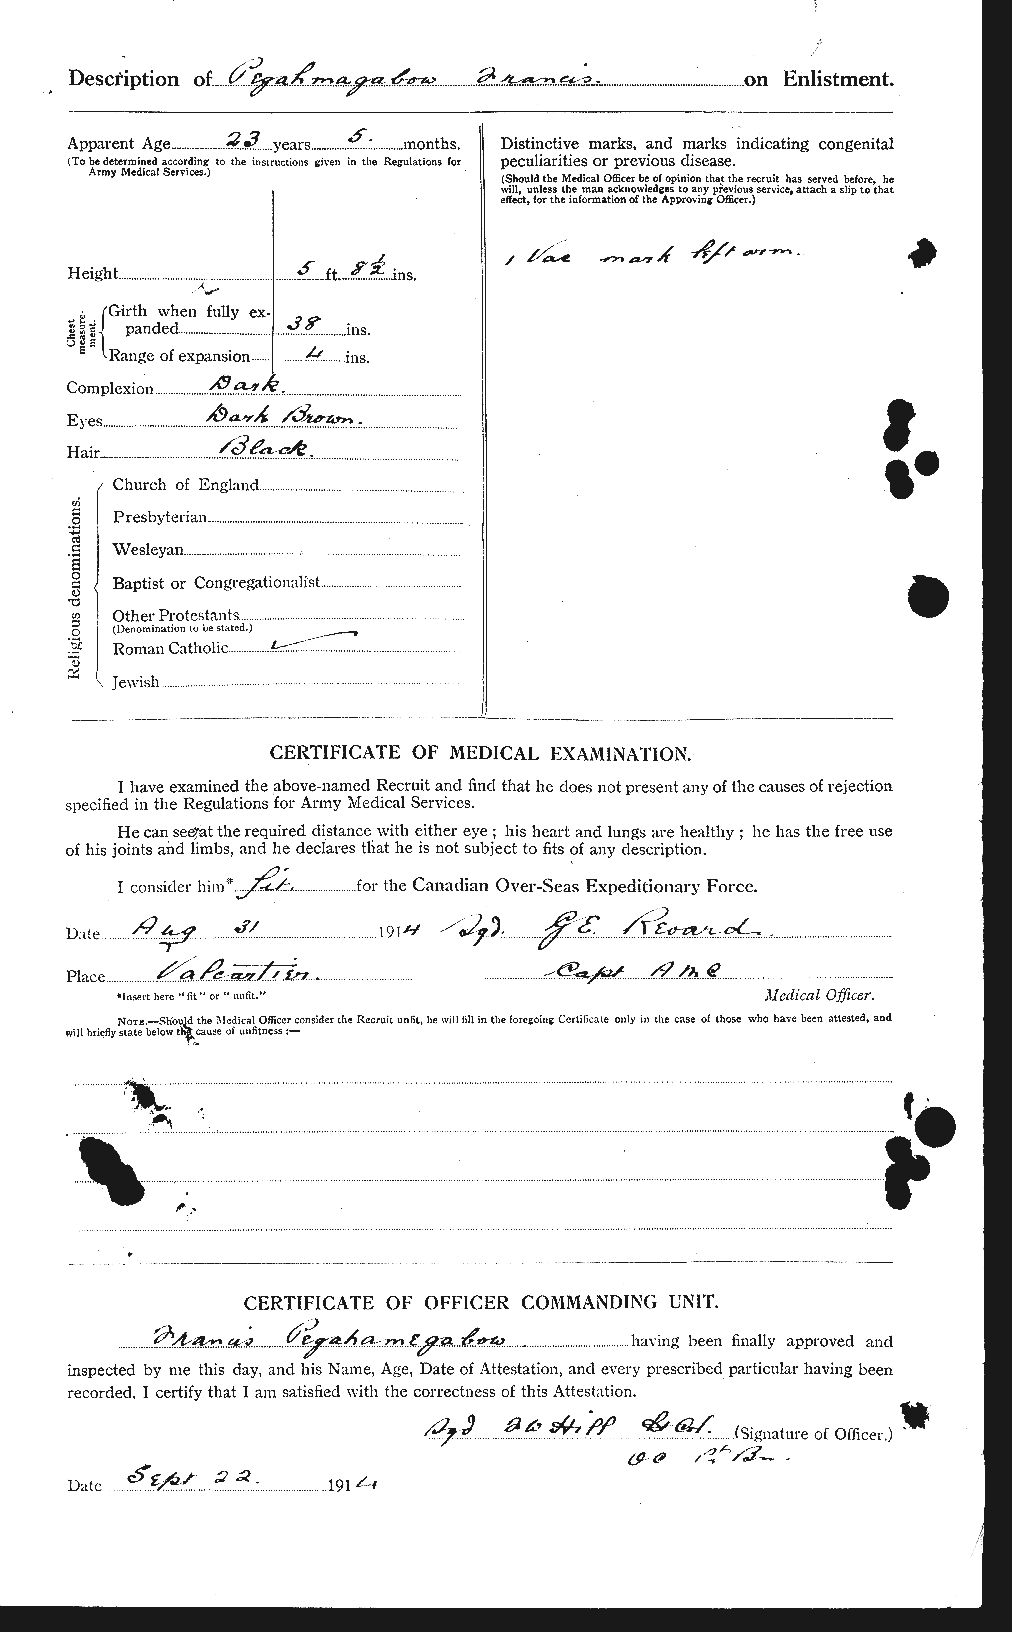 Dossiers du Personnel de la Première Guerre mondiale - CEC 571983b